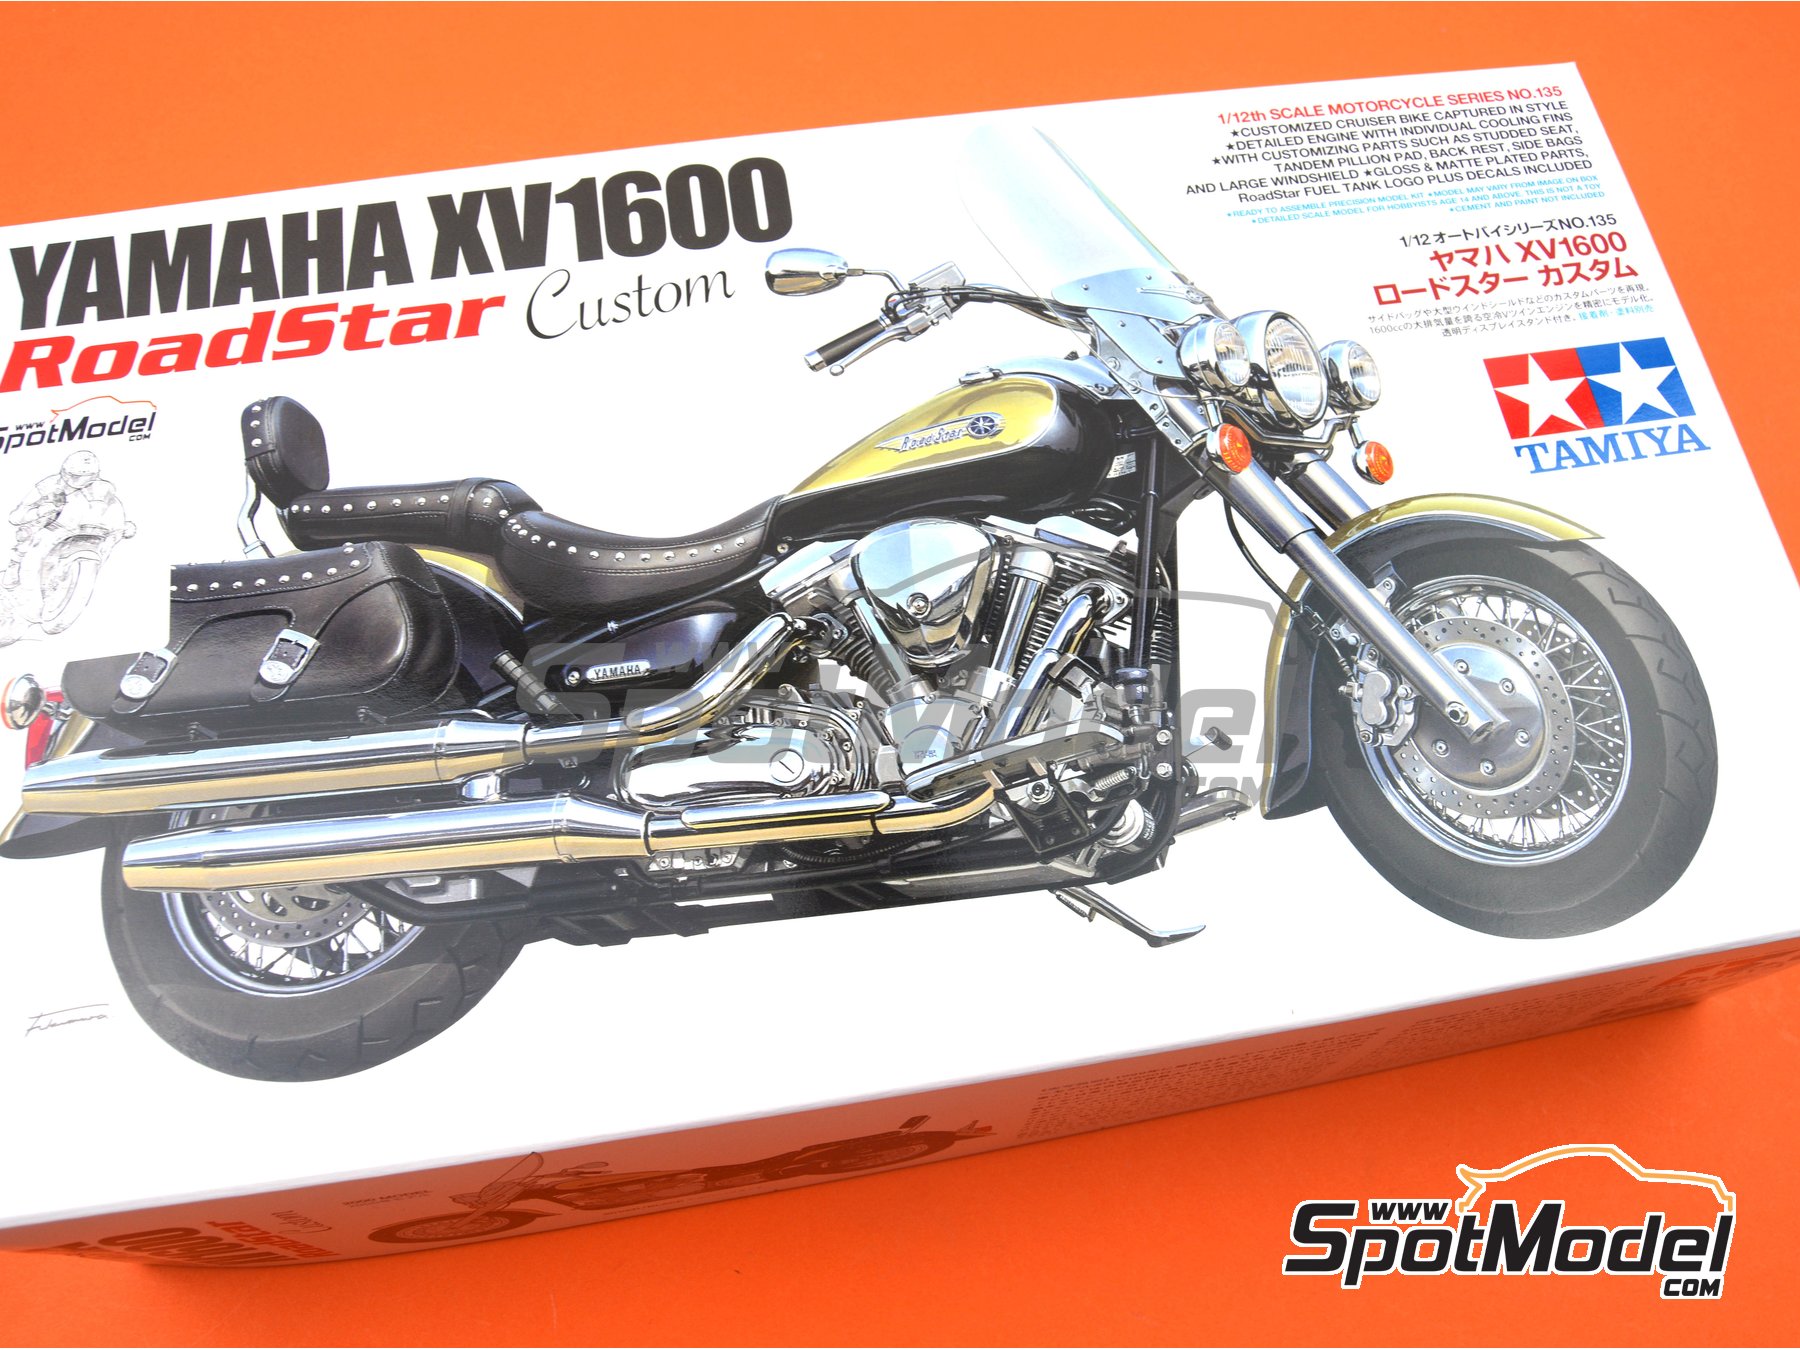 Tamiya: Model bike kit 1/12 scale - Yamaha XV1600 Road Star Custom 